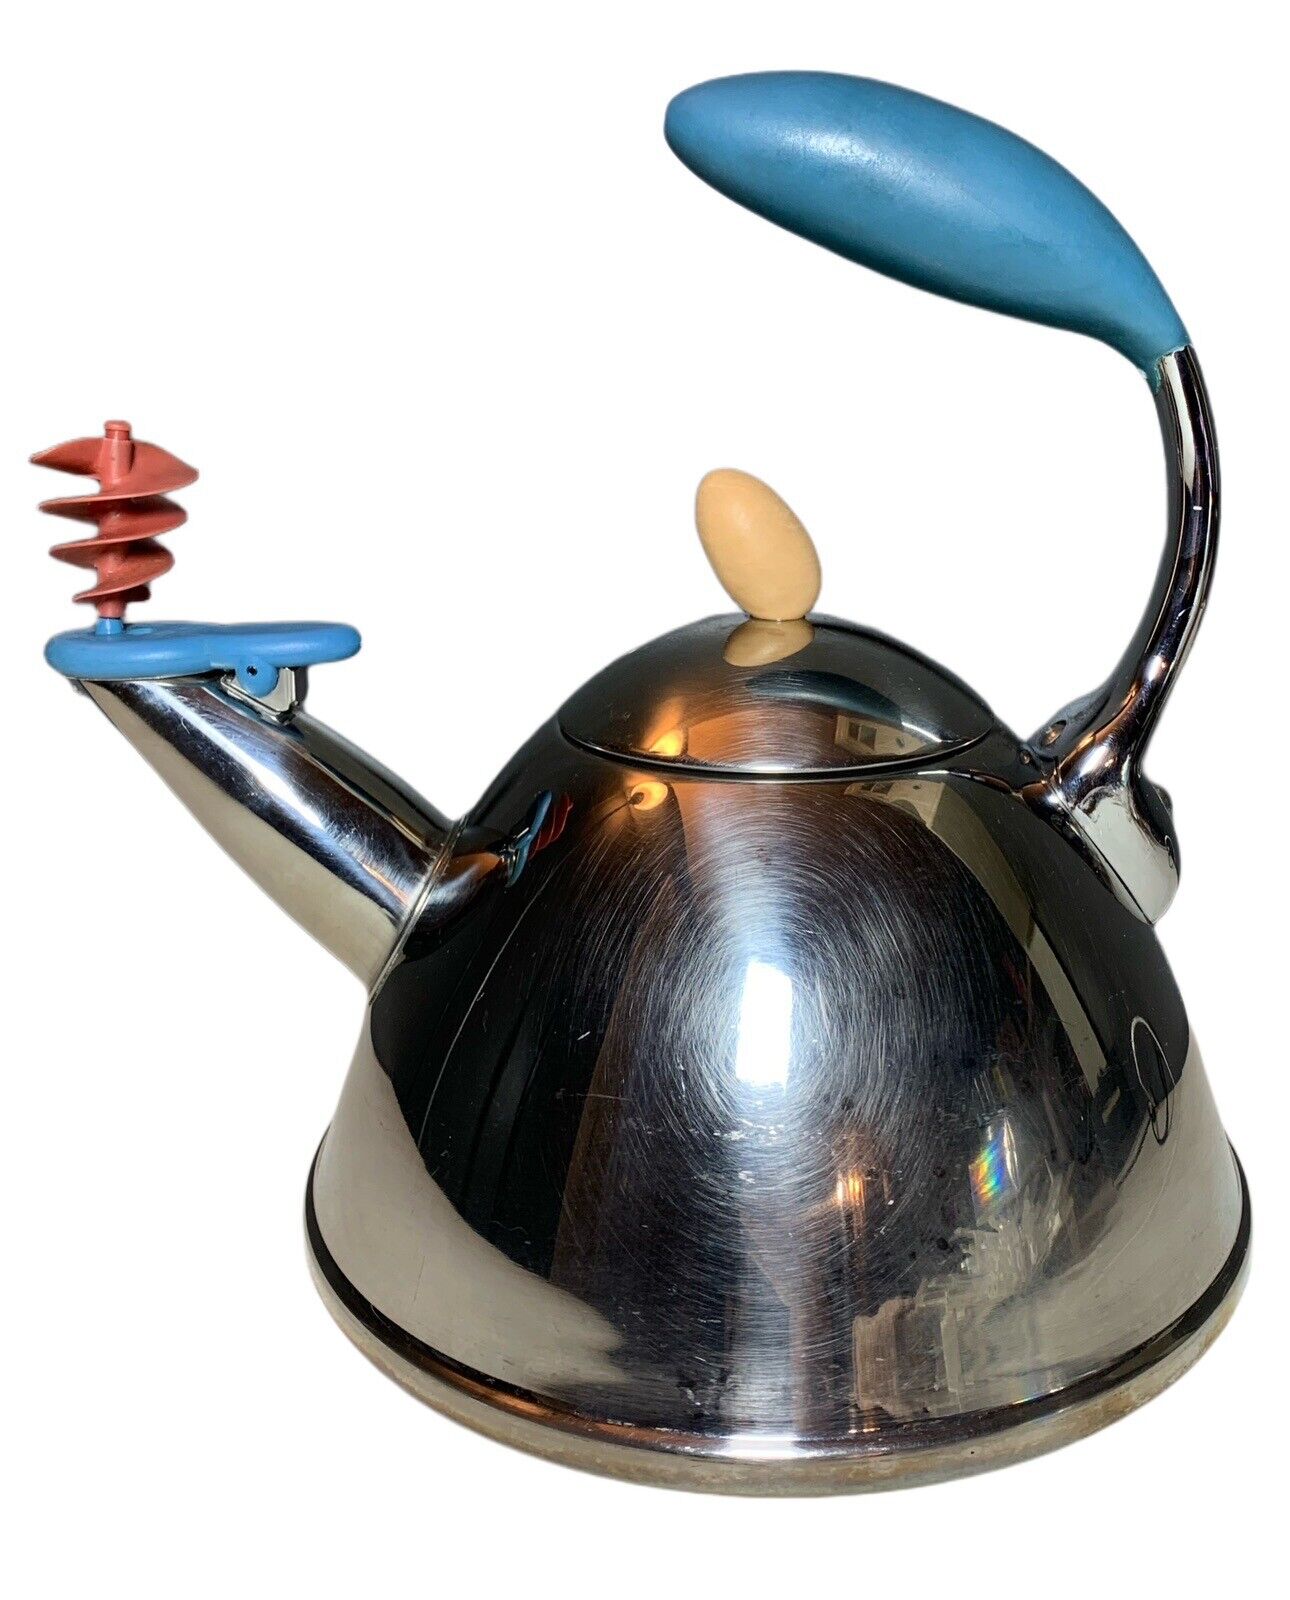 Vintage MICHAEL GRAVES Whistling Spinner Stainless Tea Kettle Pot